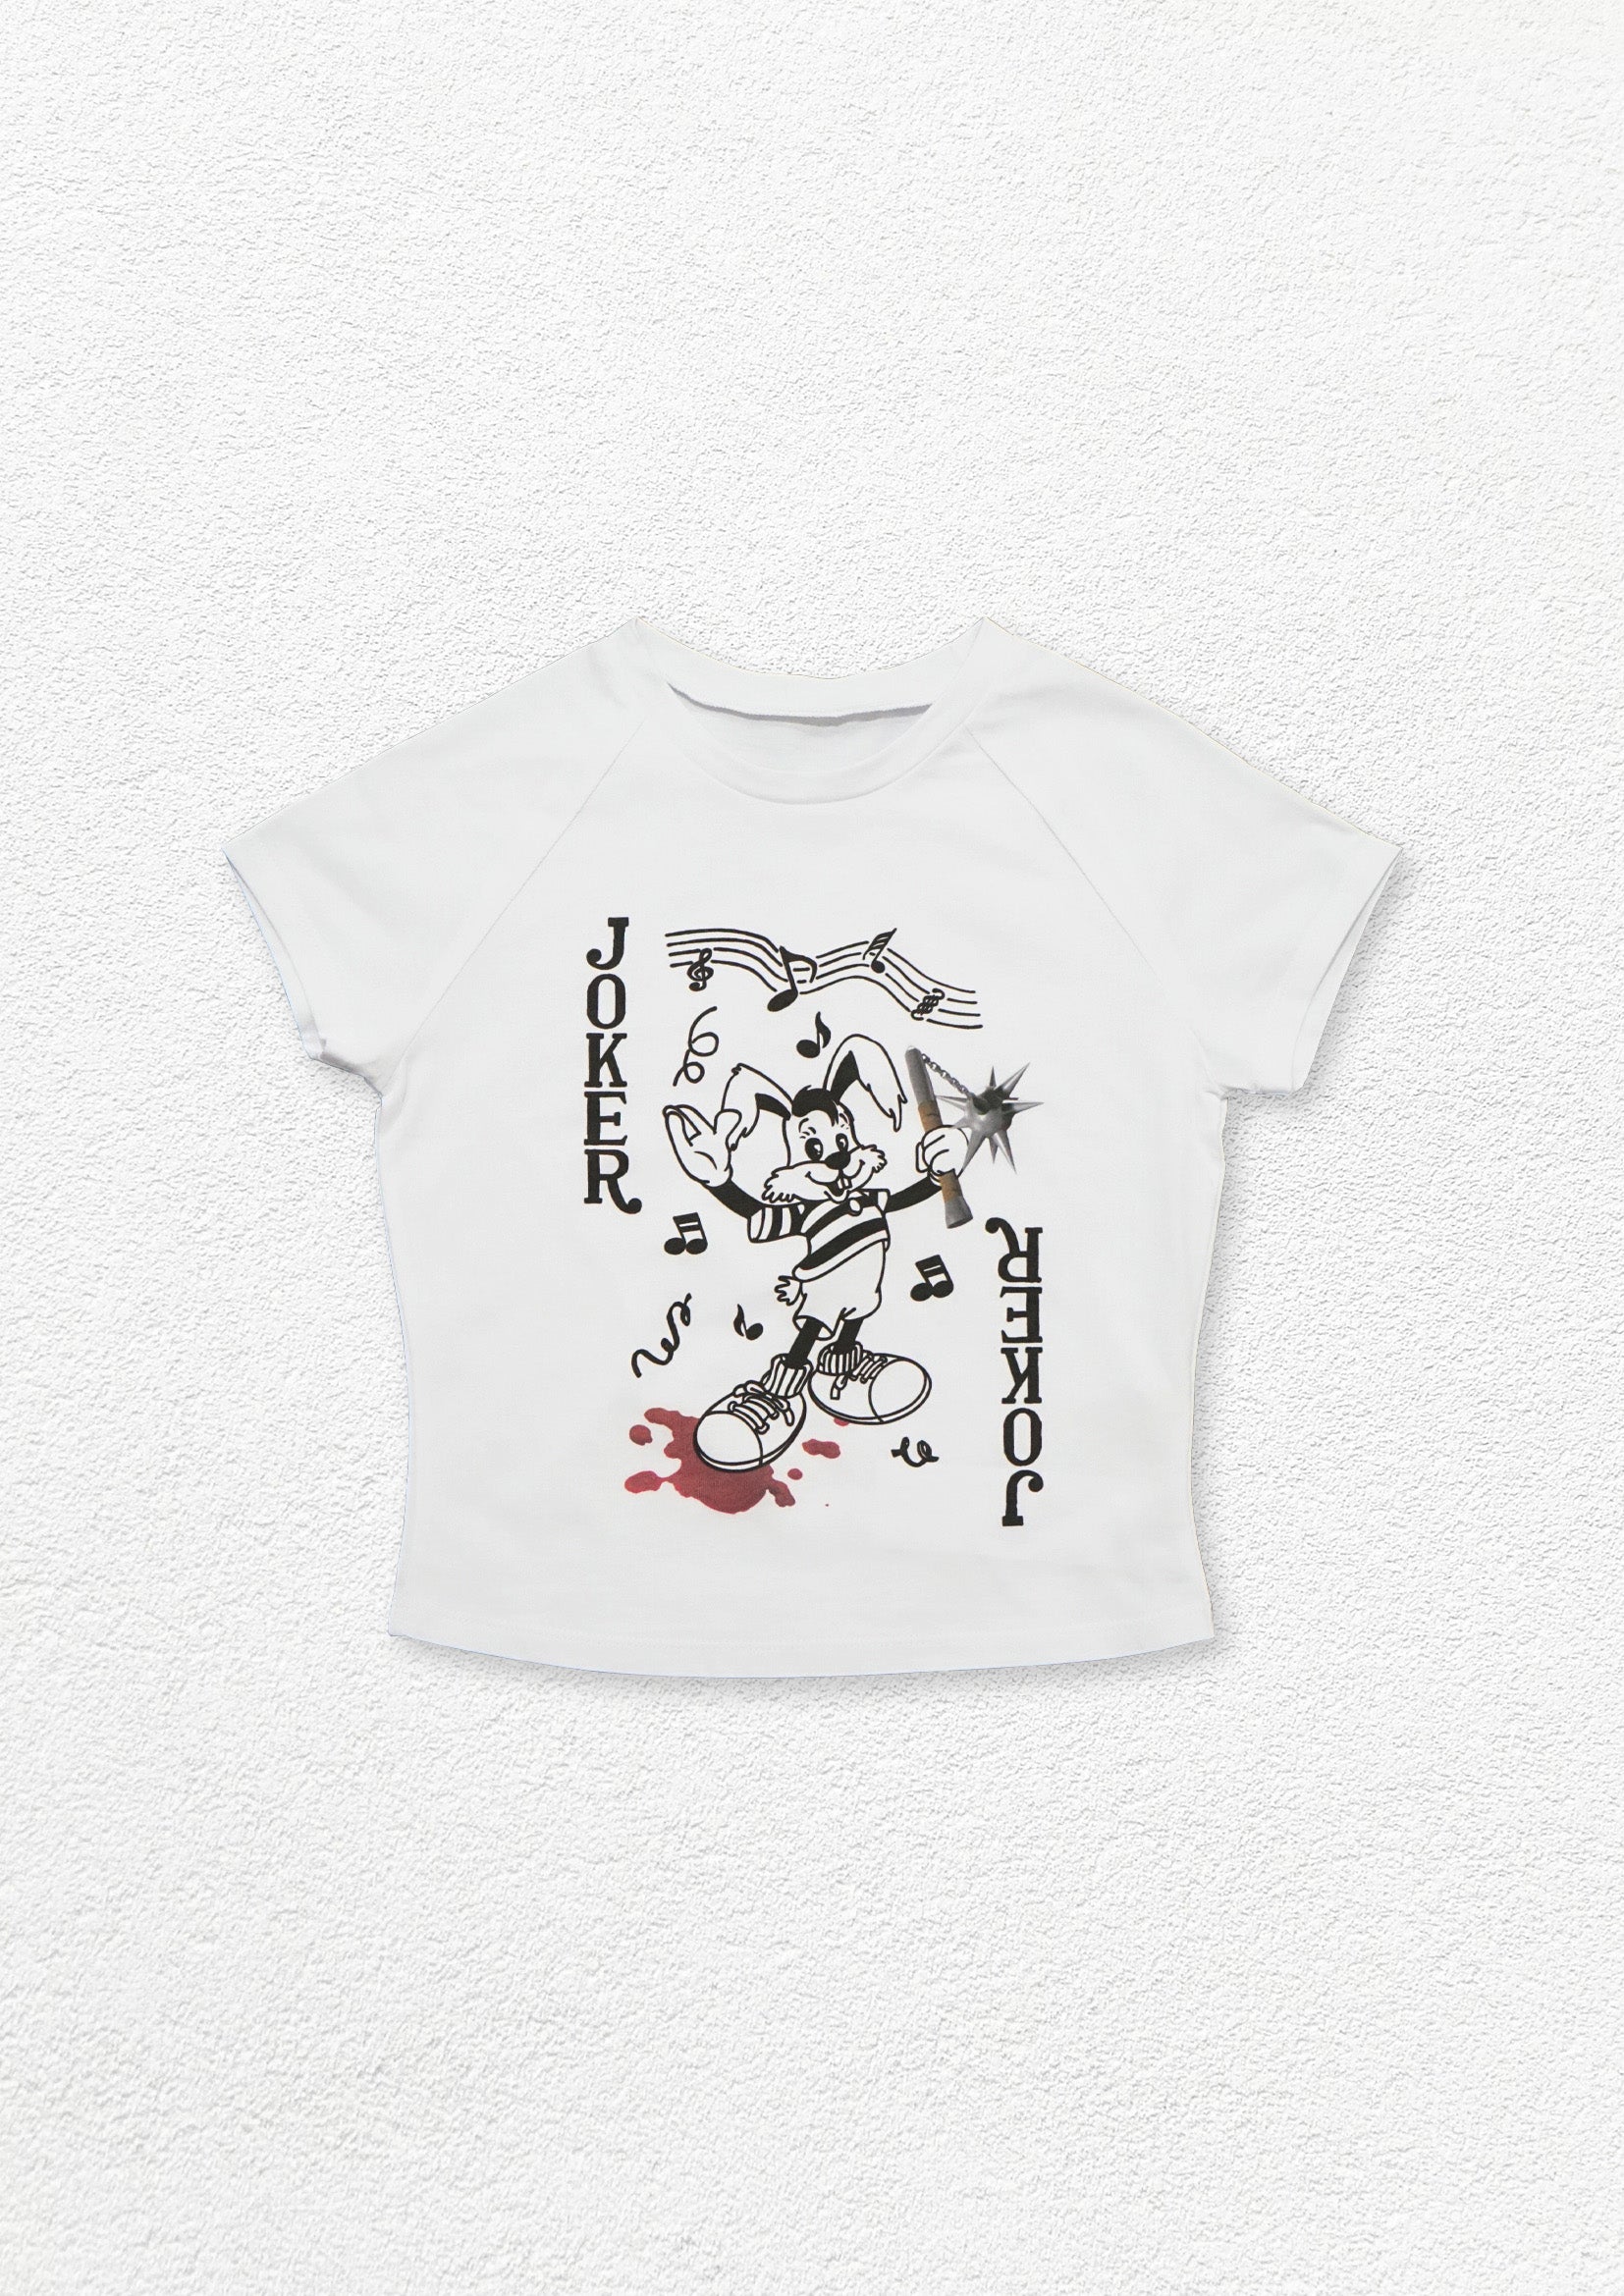 Joker Rabbit crop t-shirt - white